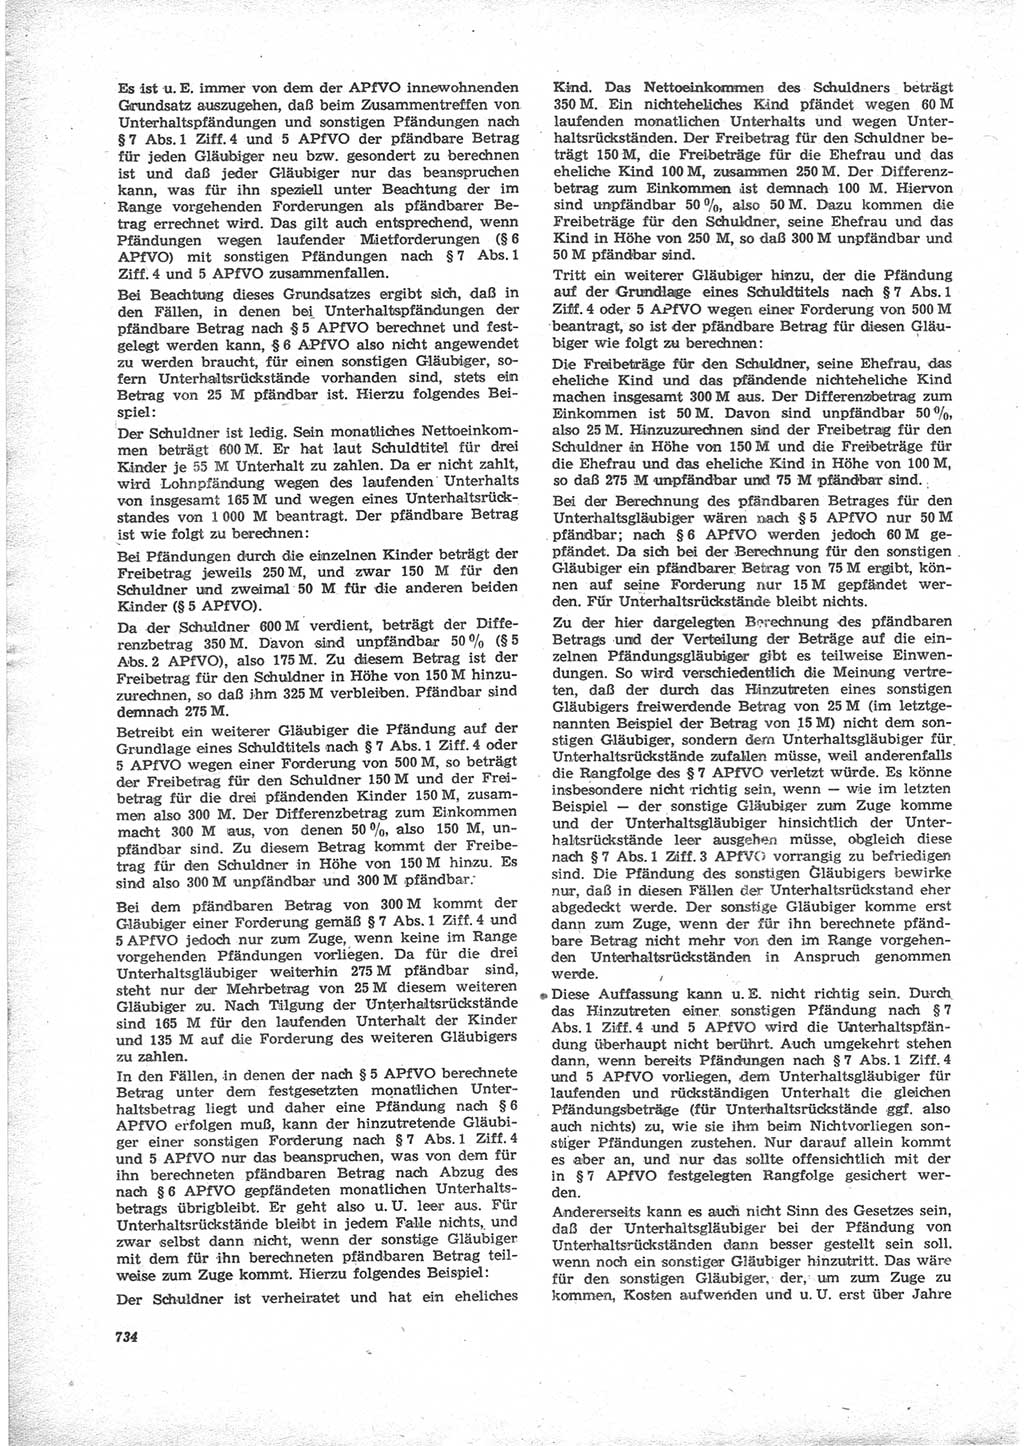 Neue Justiz (NJ), Zeitschrift für Recht und Rechtswissenschaft [Deutsche Demokratische Republik (DDR)], 24. Jahrgang 1970, Seite 734 (NJ DDR 1970, S. 734)